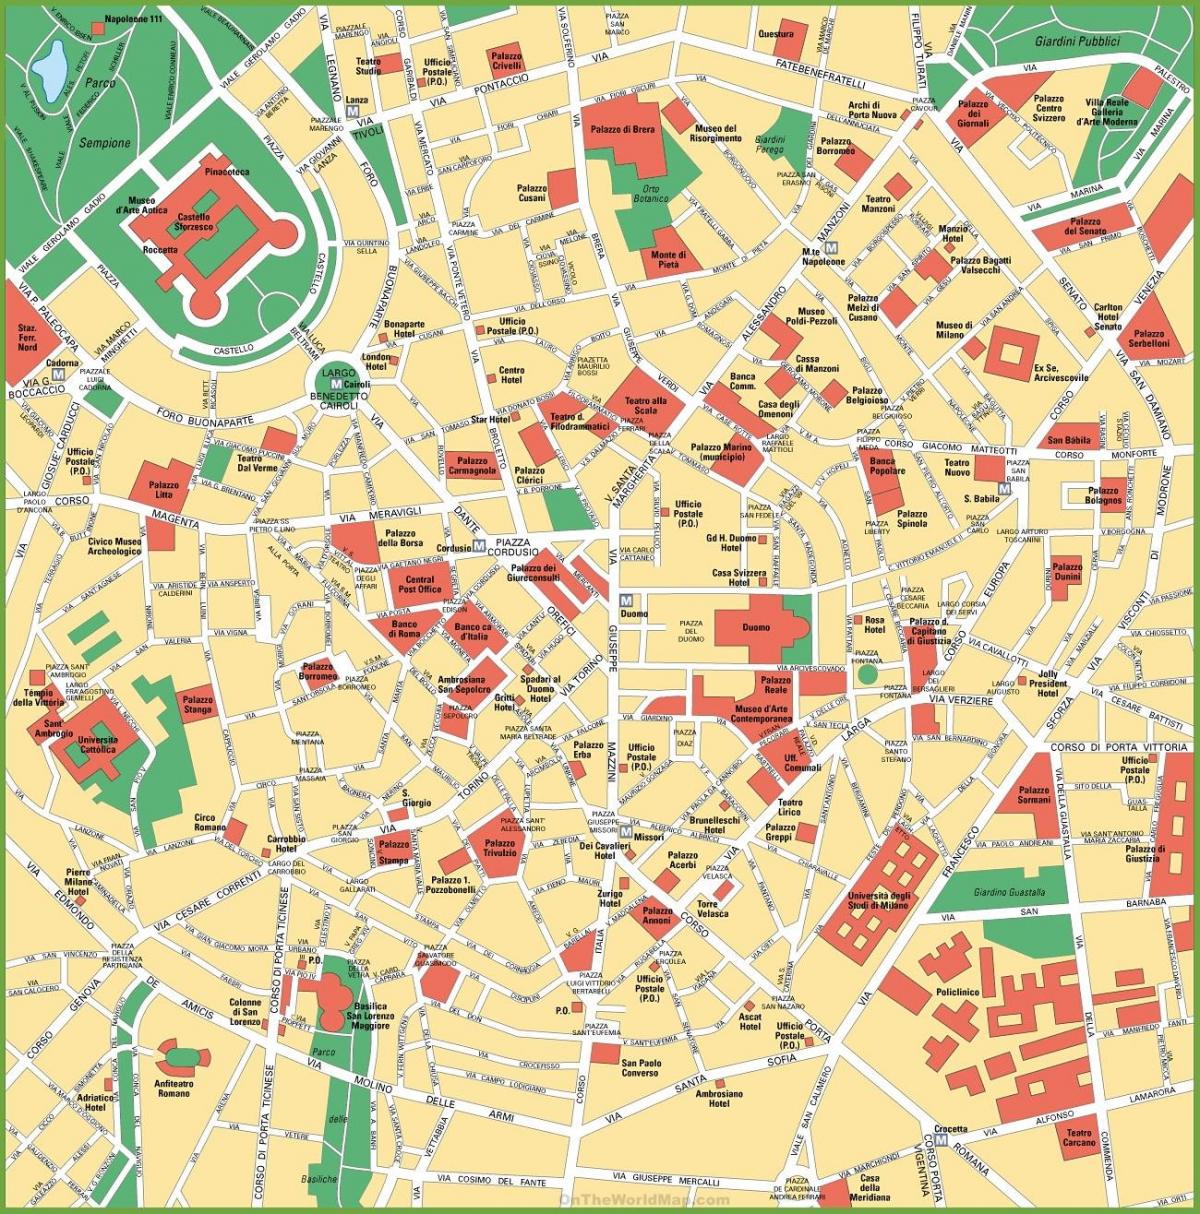 Plan du centre ville de Milan